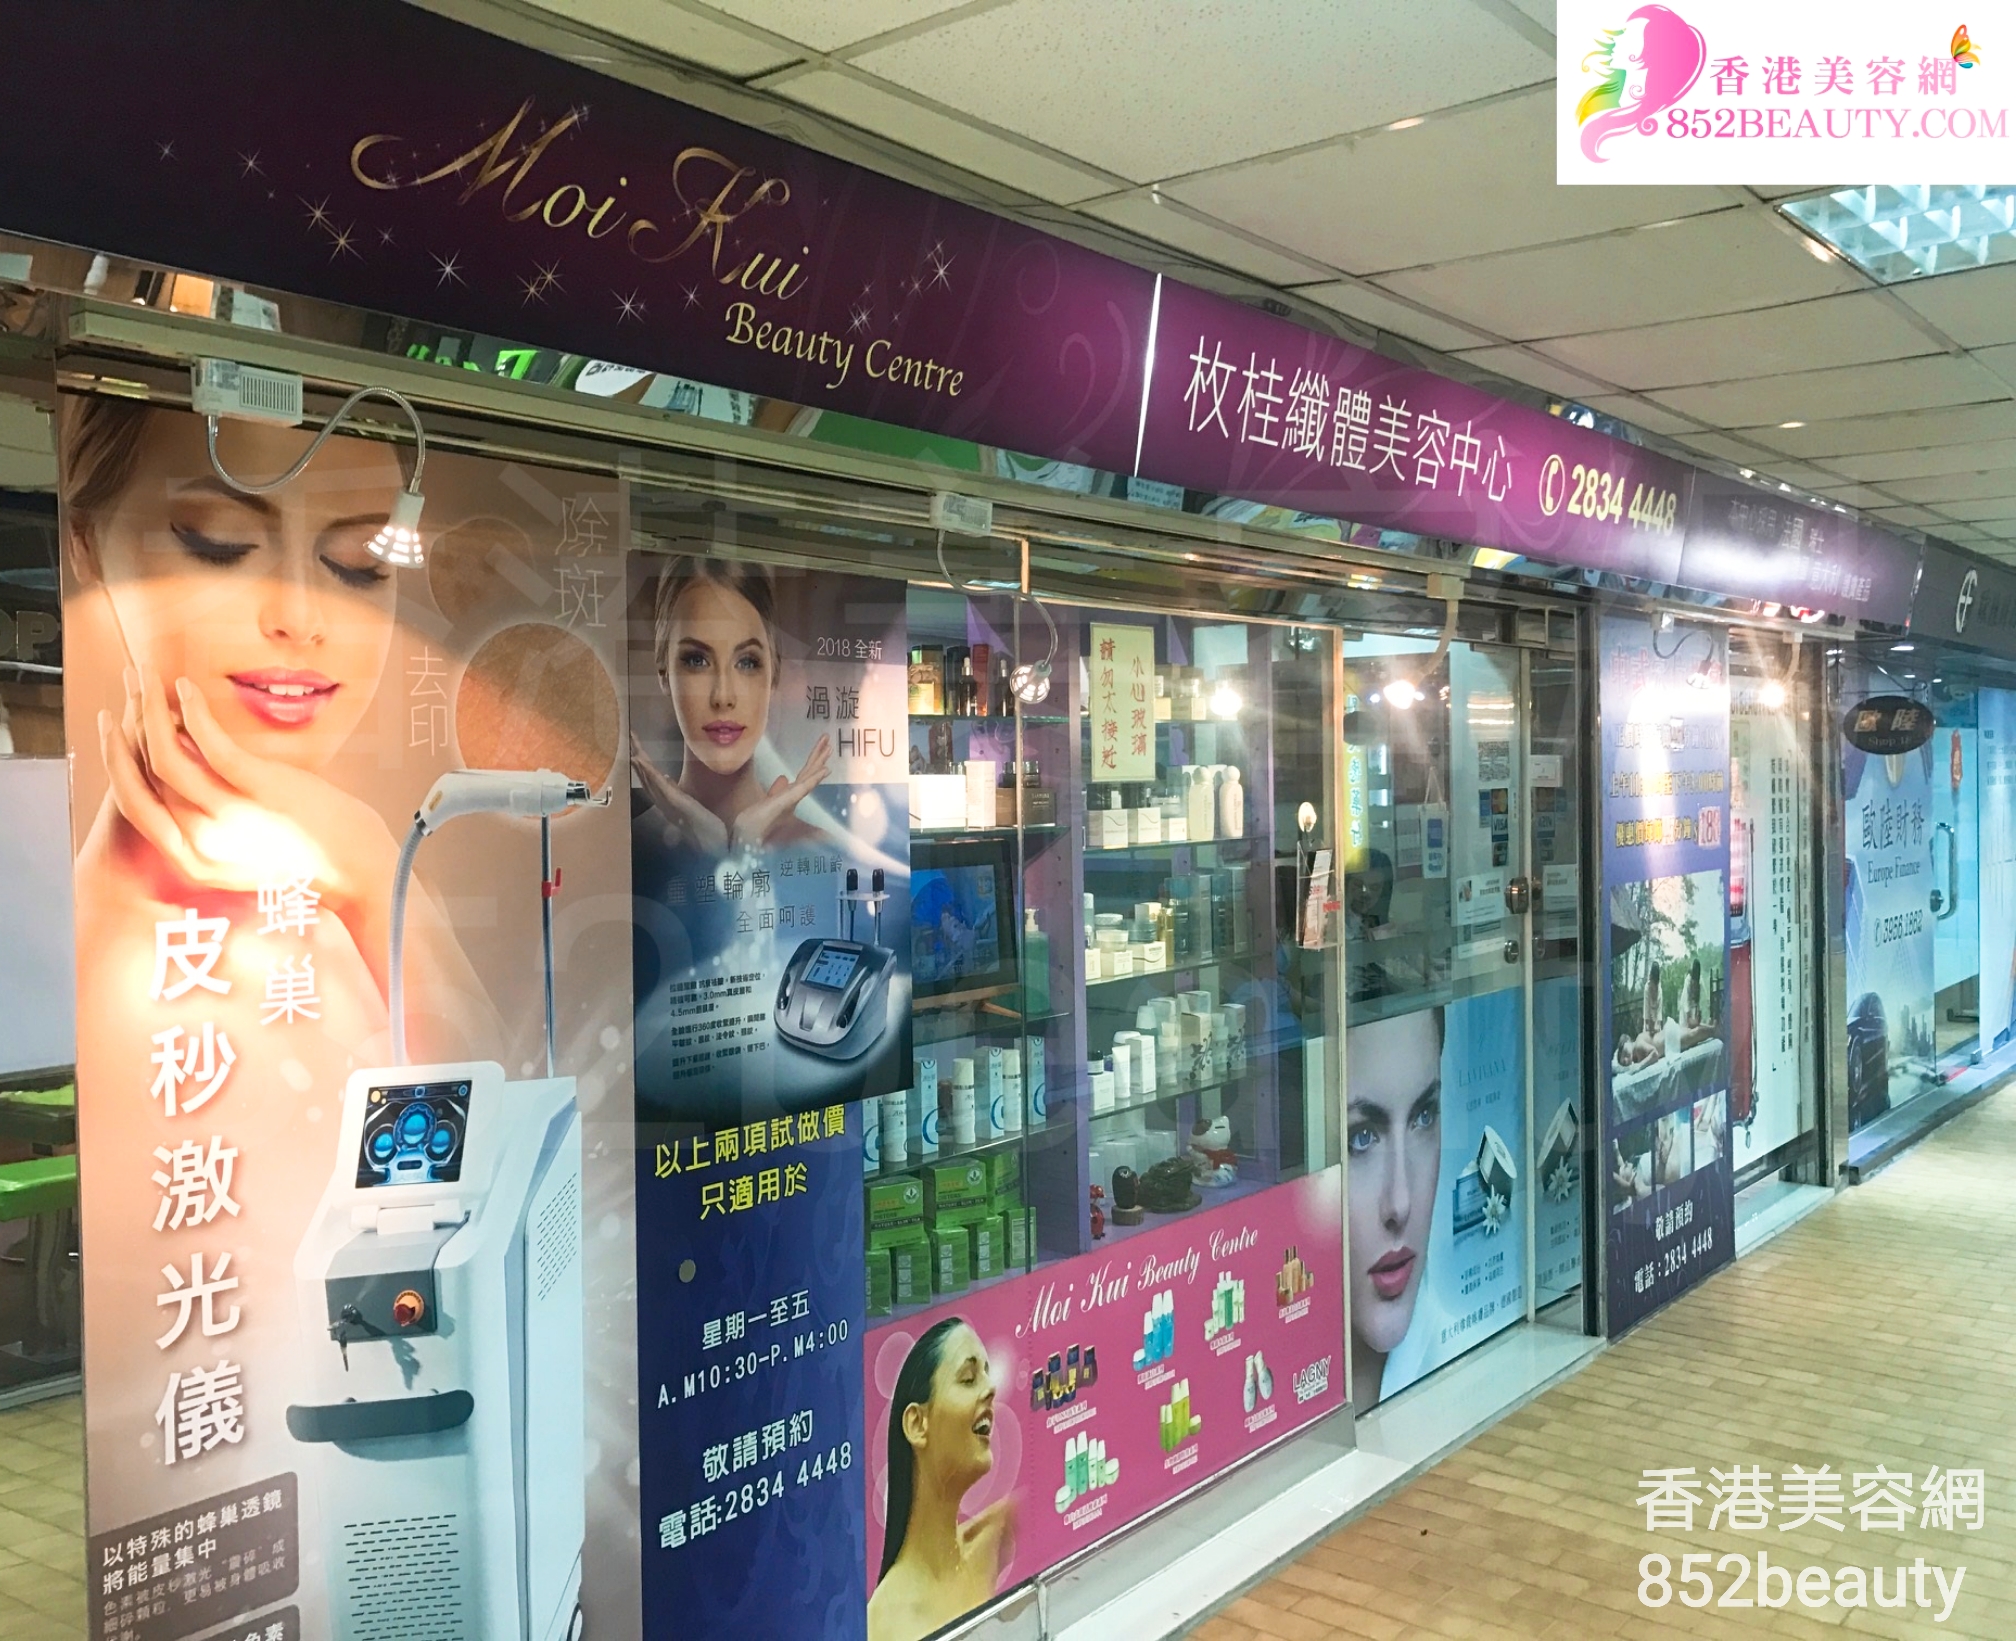 美容院 Beauty Salon: 枚桂纖體美容中心 Moi Kui Beauty Centre